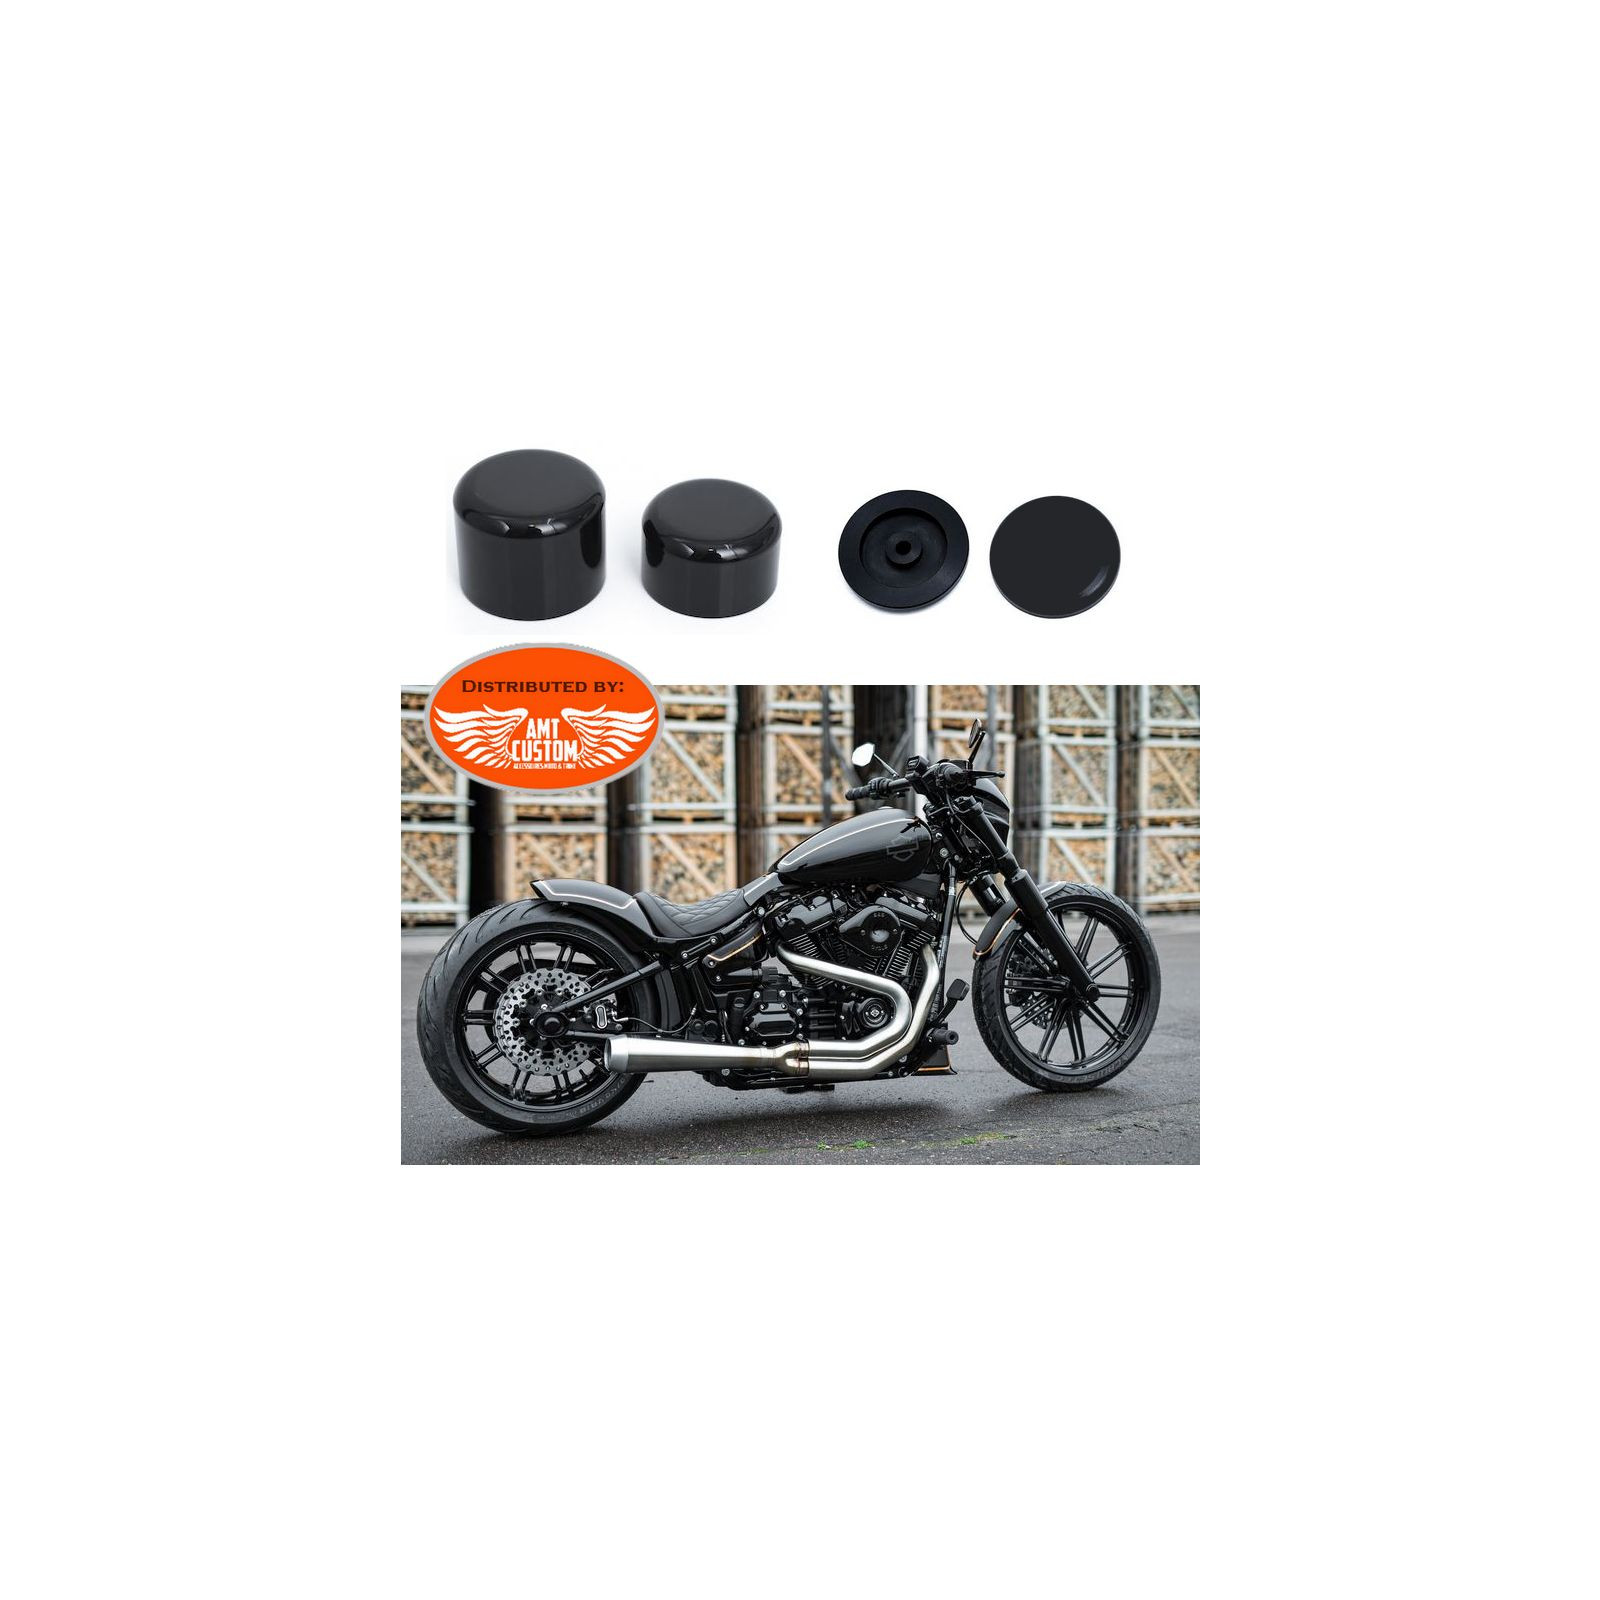 Achetez votre Housse pour indicateurs avec boulon M8, plastique noir, jeu  de 4 pièces. pour Harley Davidson ou moto custom.